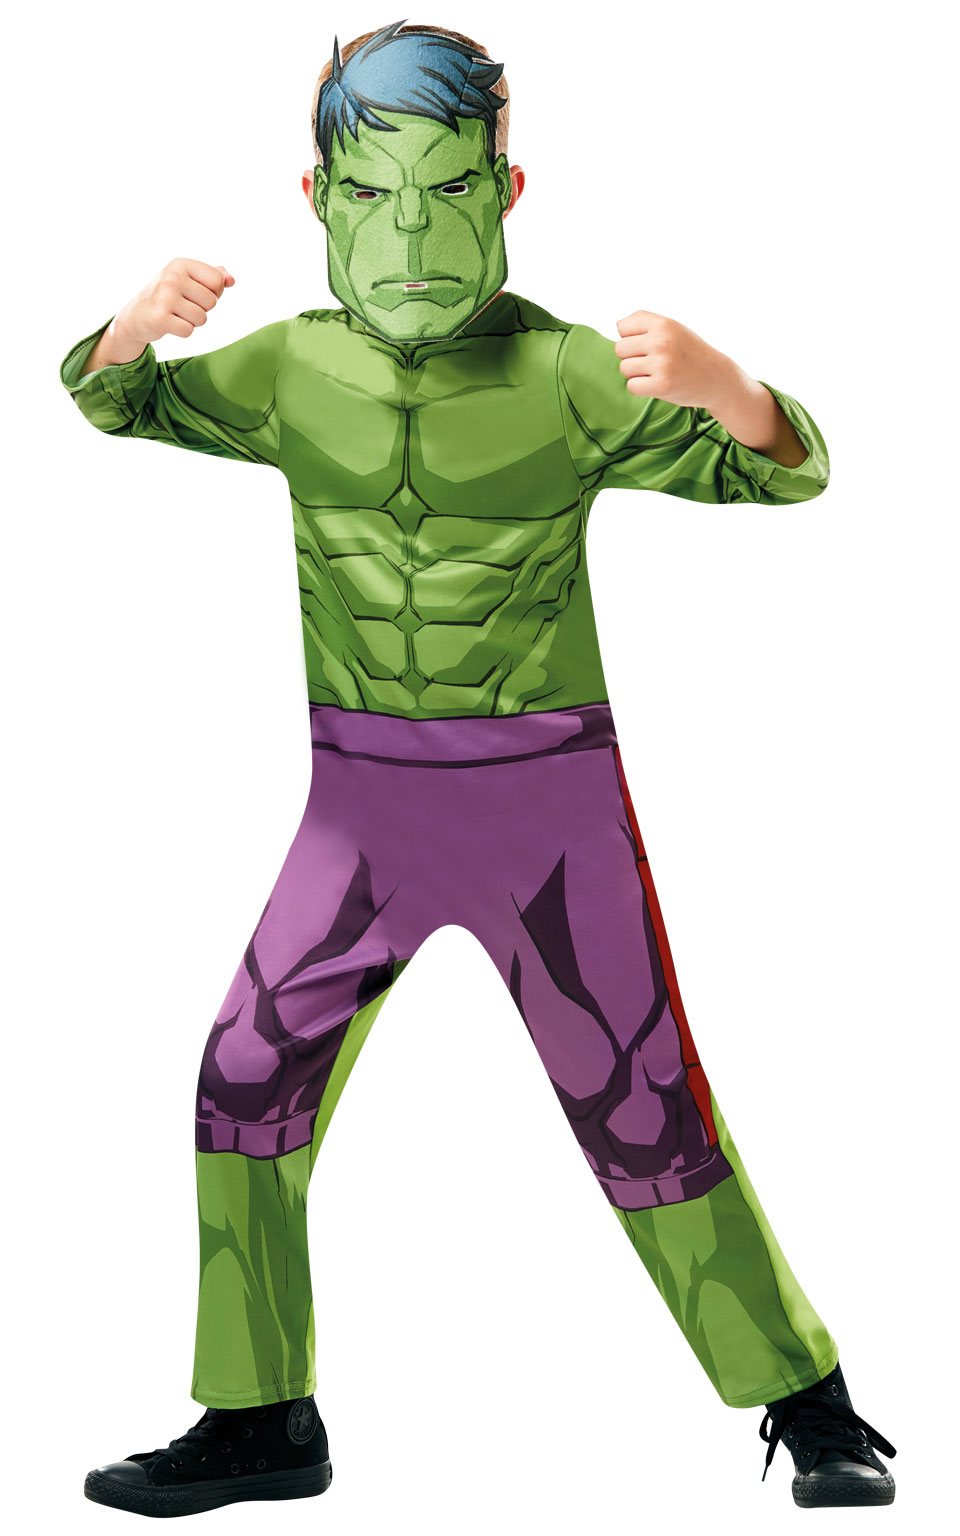 Rubies Detský kostým Hulk Veľkosť - deti: L